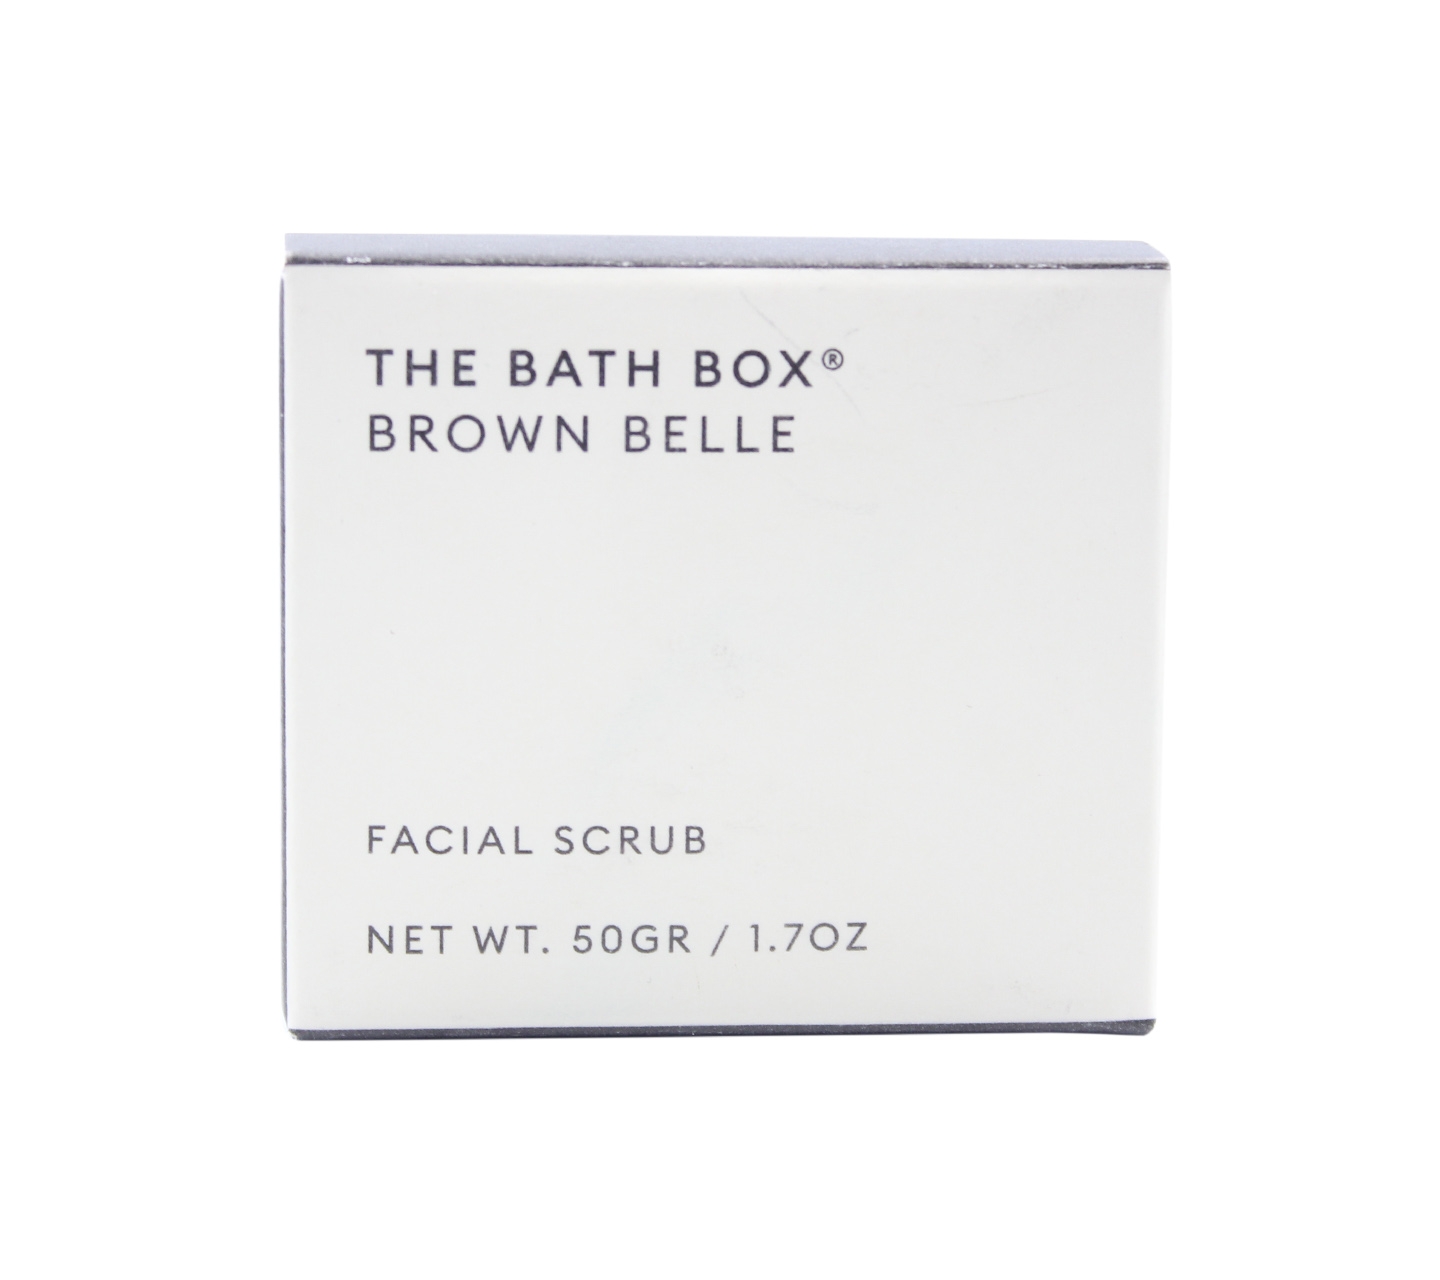 The Bath Box Brown Belle Facial Scrub Skin Care